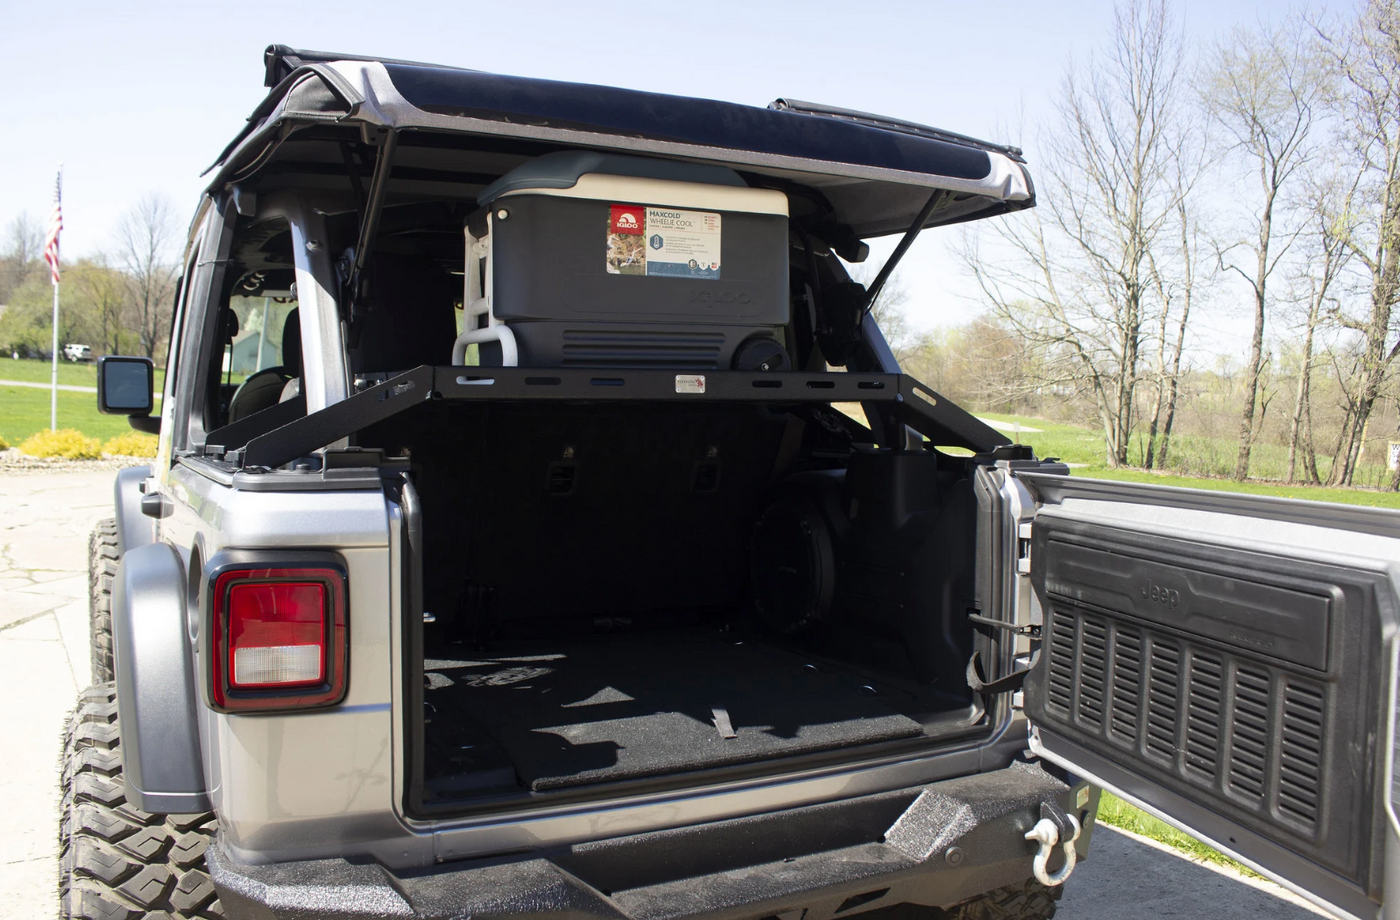 Fishbone Offroad interior Storage Rack for 18-22 Jeep Wrangler JLU 4-Door